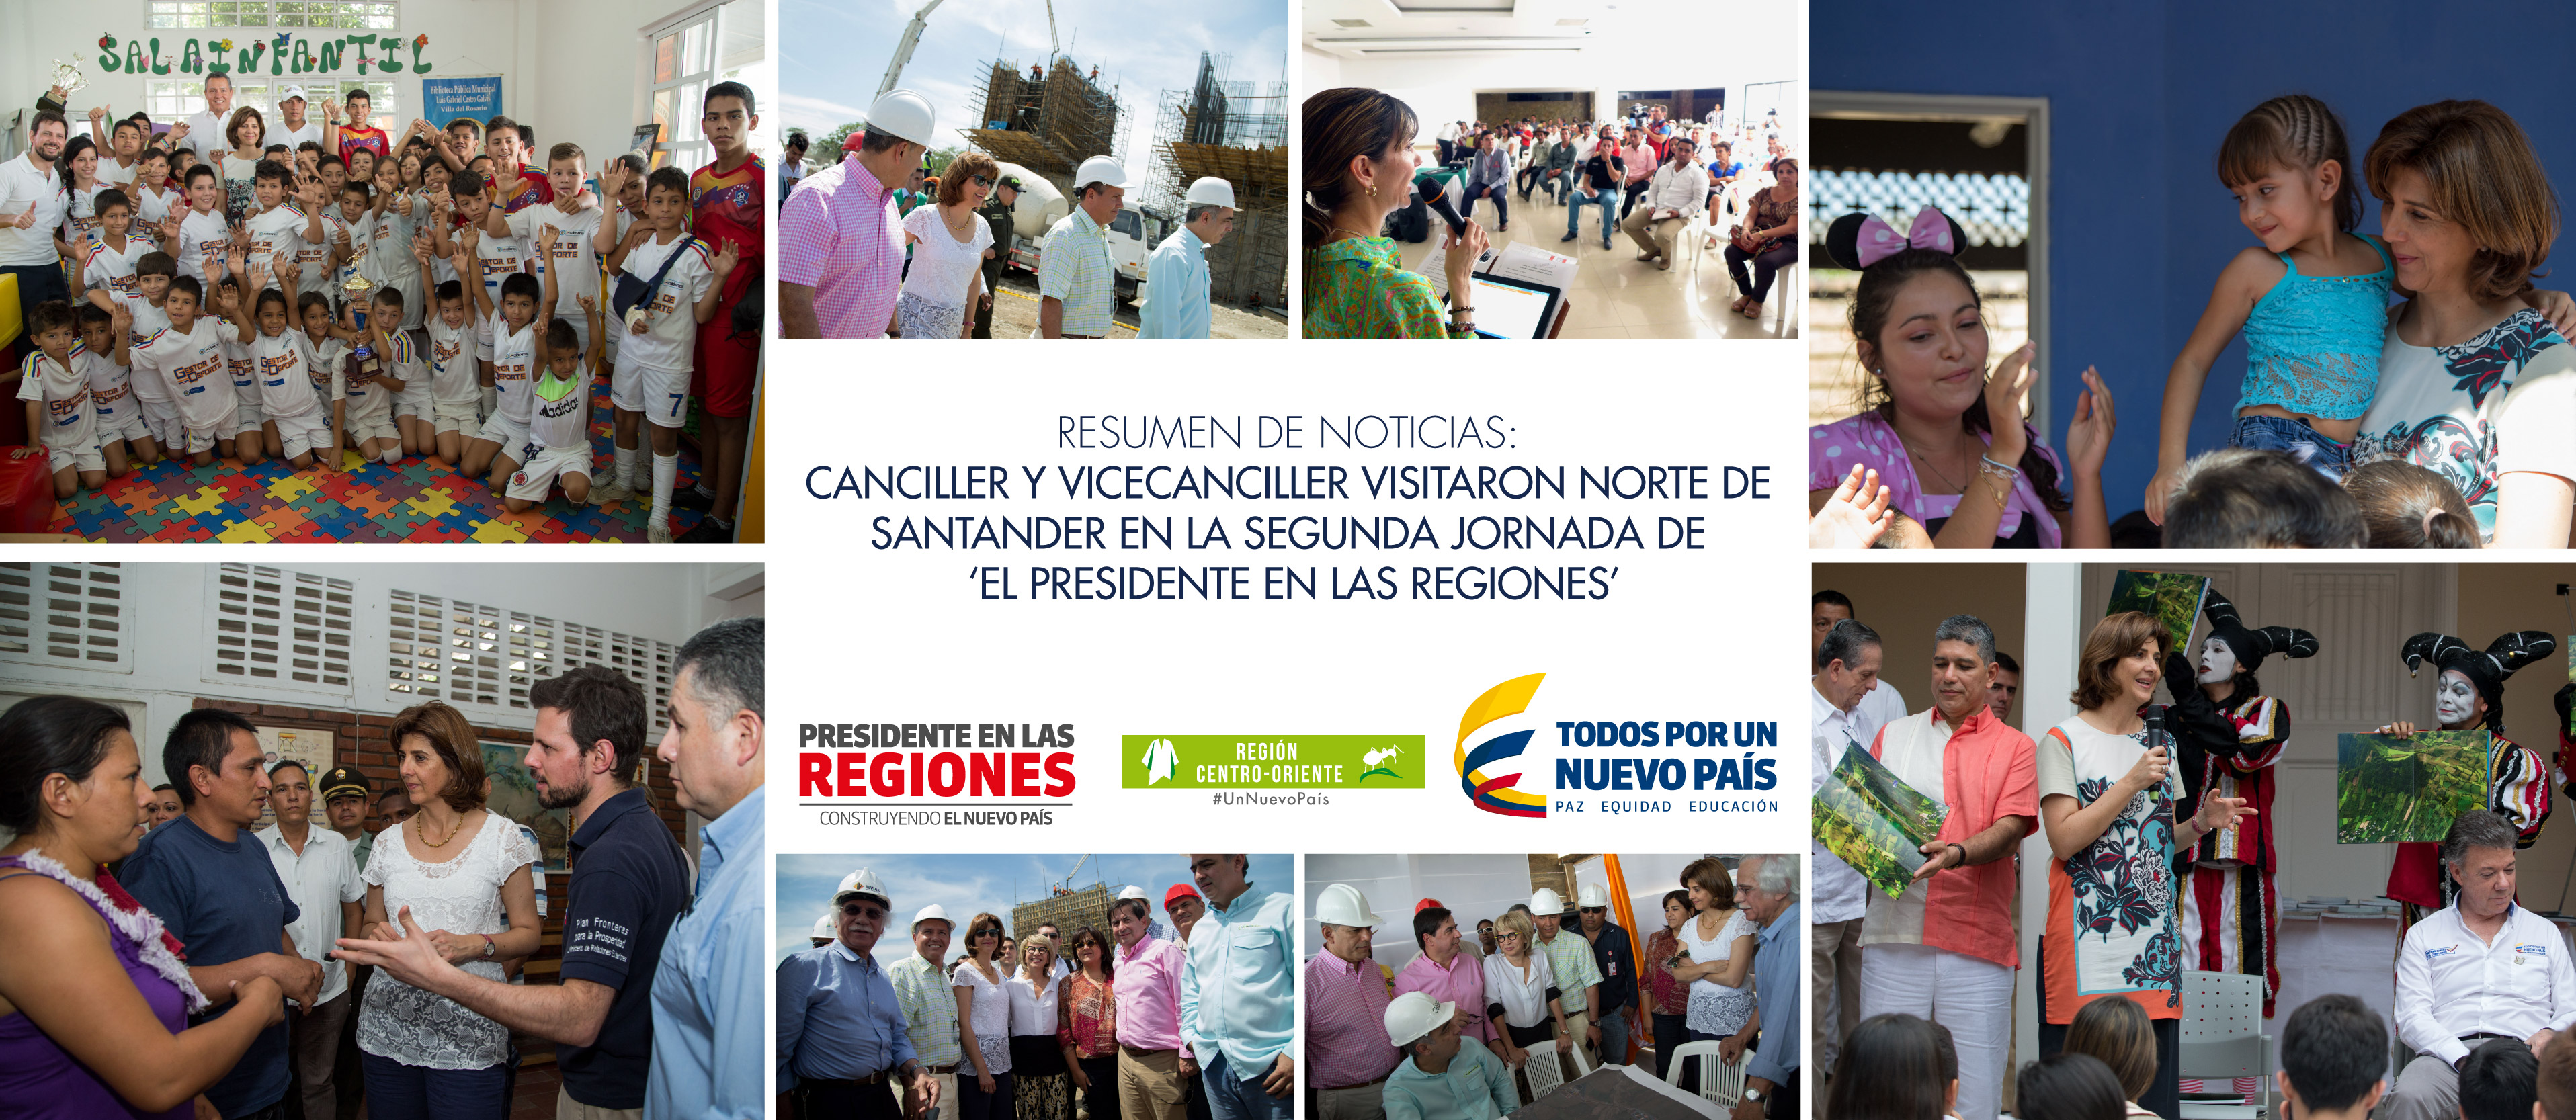 Resumen de noticias: Norte de Santander en la segunda jornada de ‘El Presidente en las Regiones’ 